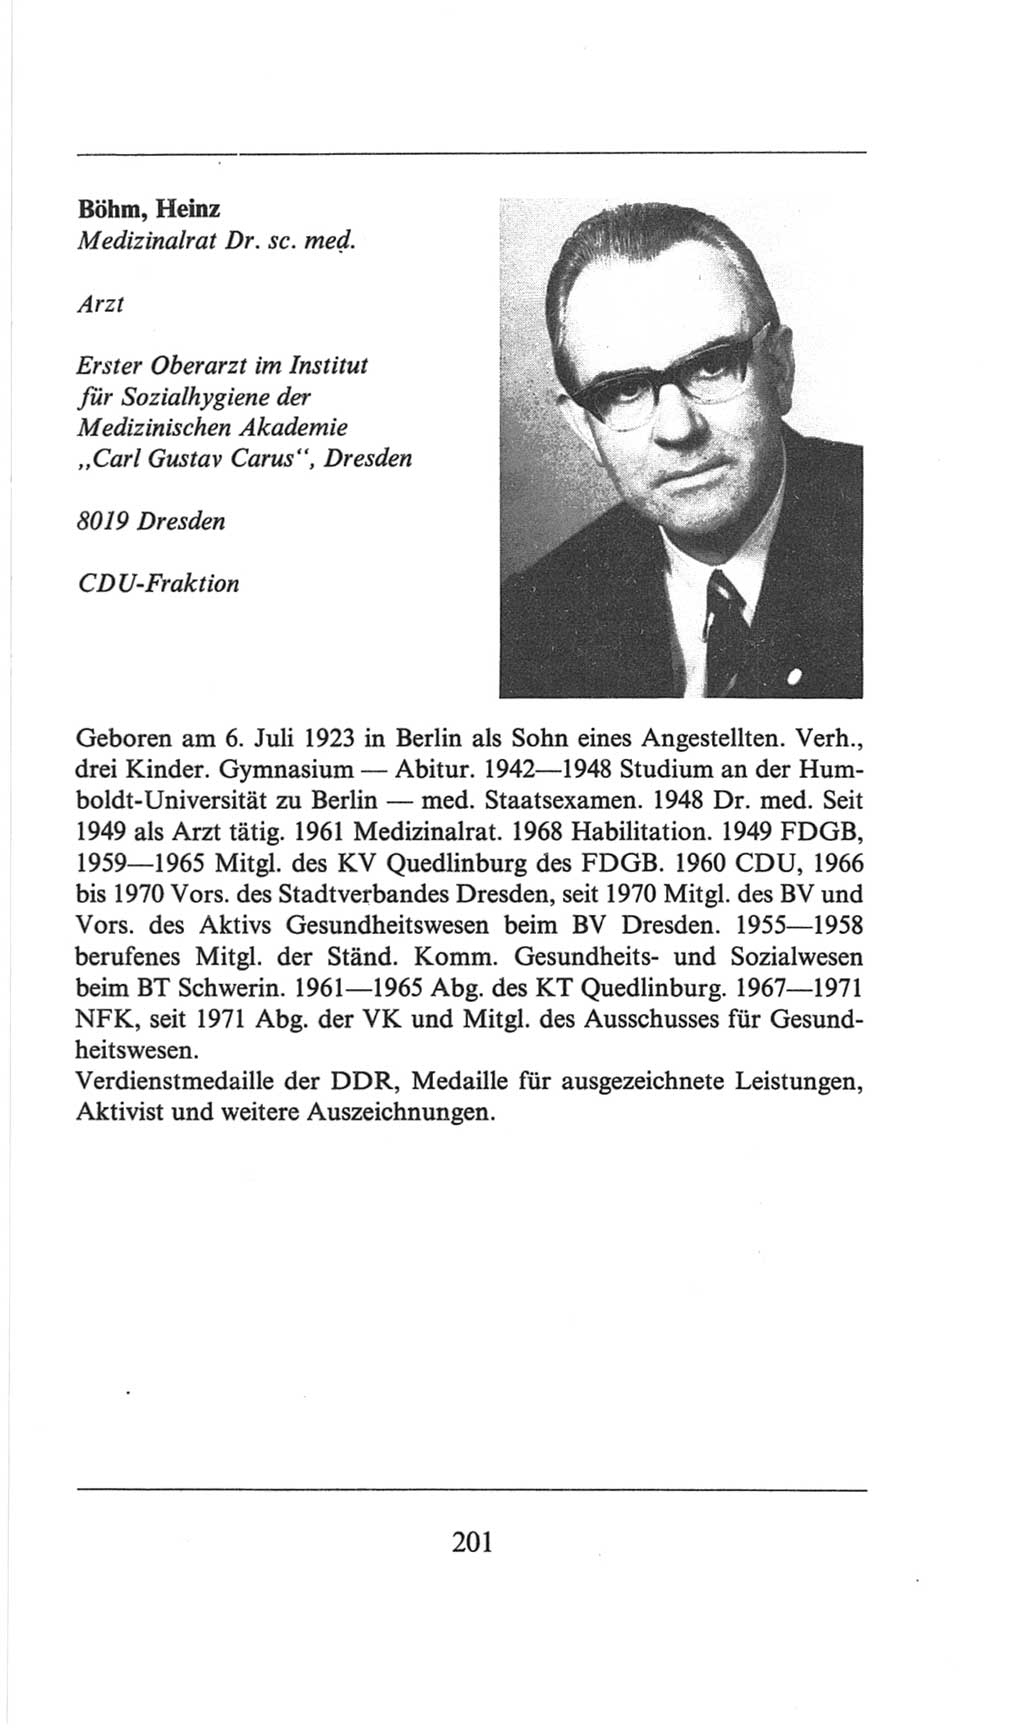 Volkskammer (VK) der Deutschen Demokratischen Republik (DDR), 6. Wahlperiode 1971-1976, Seite 201 (VK. DDR 6. WP. 1971-1976, S. 201)